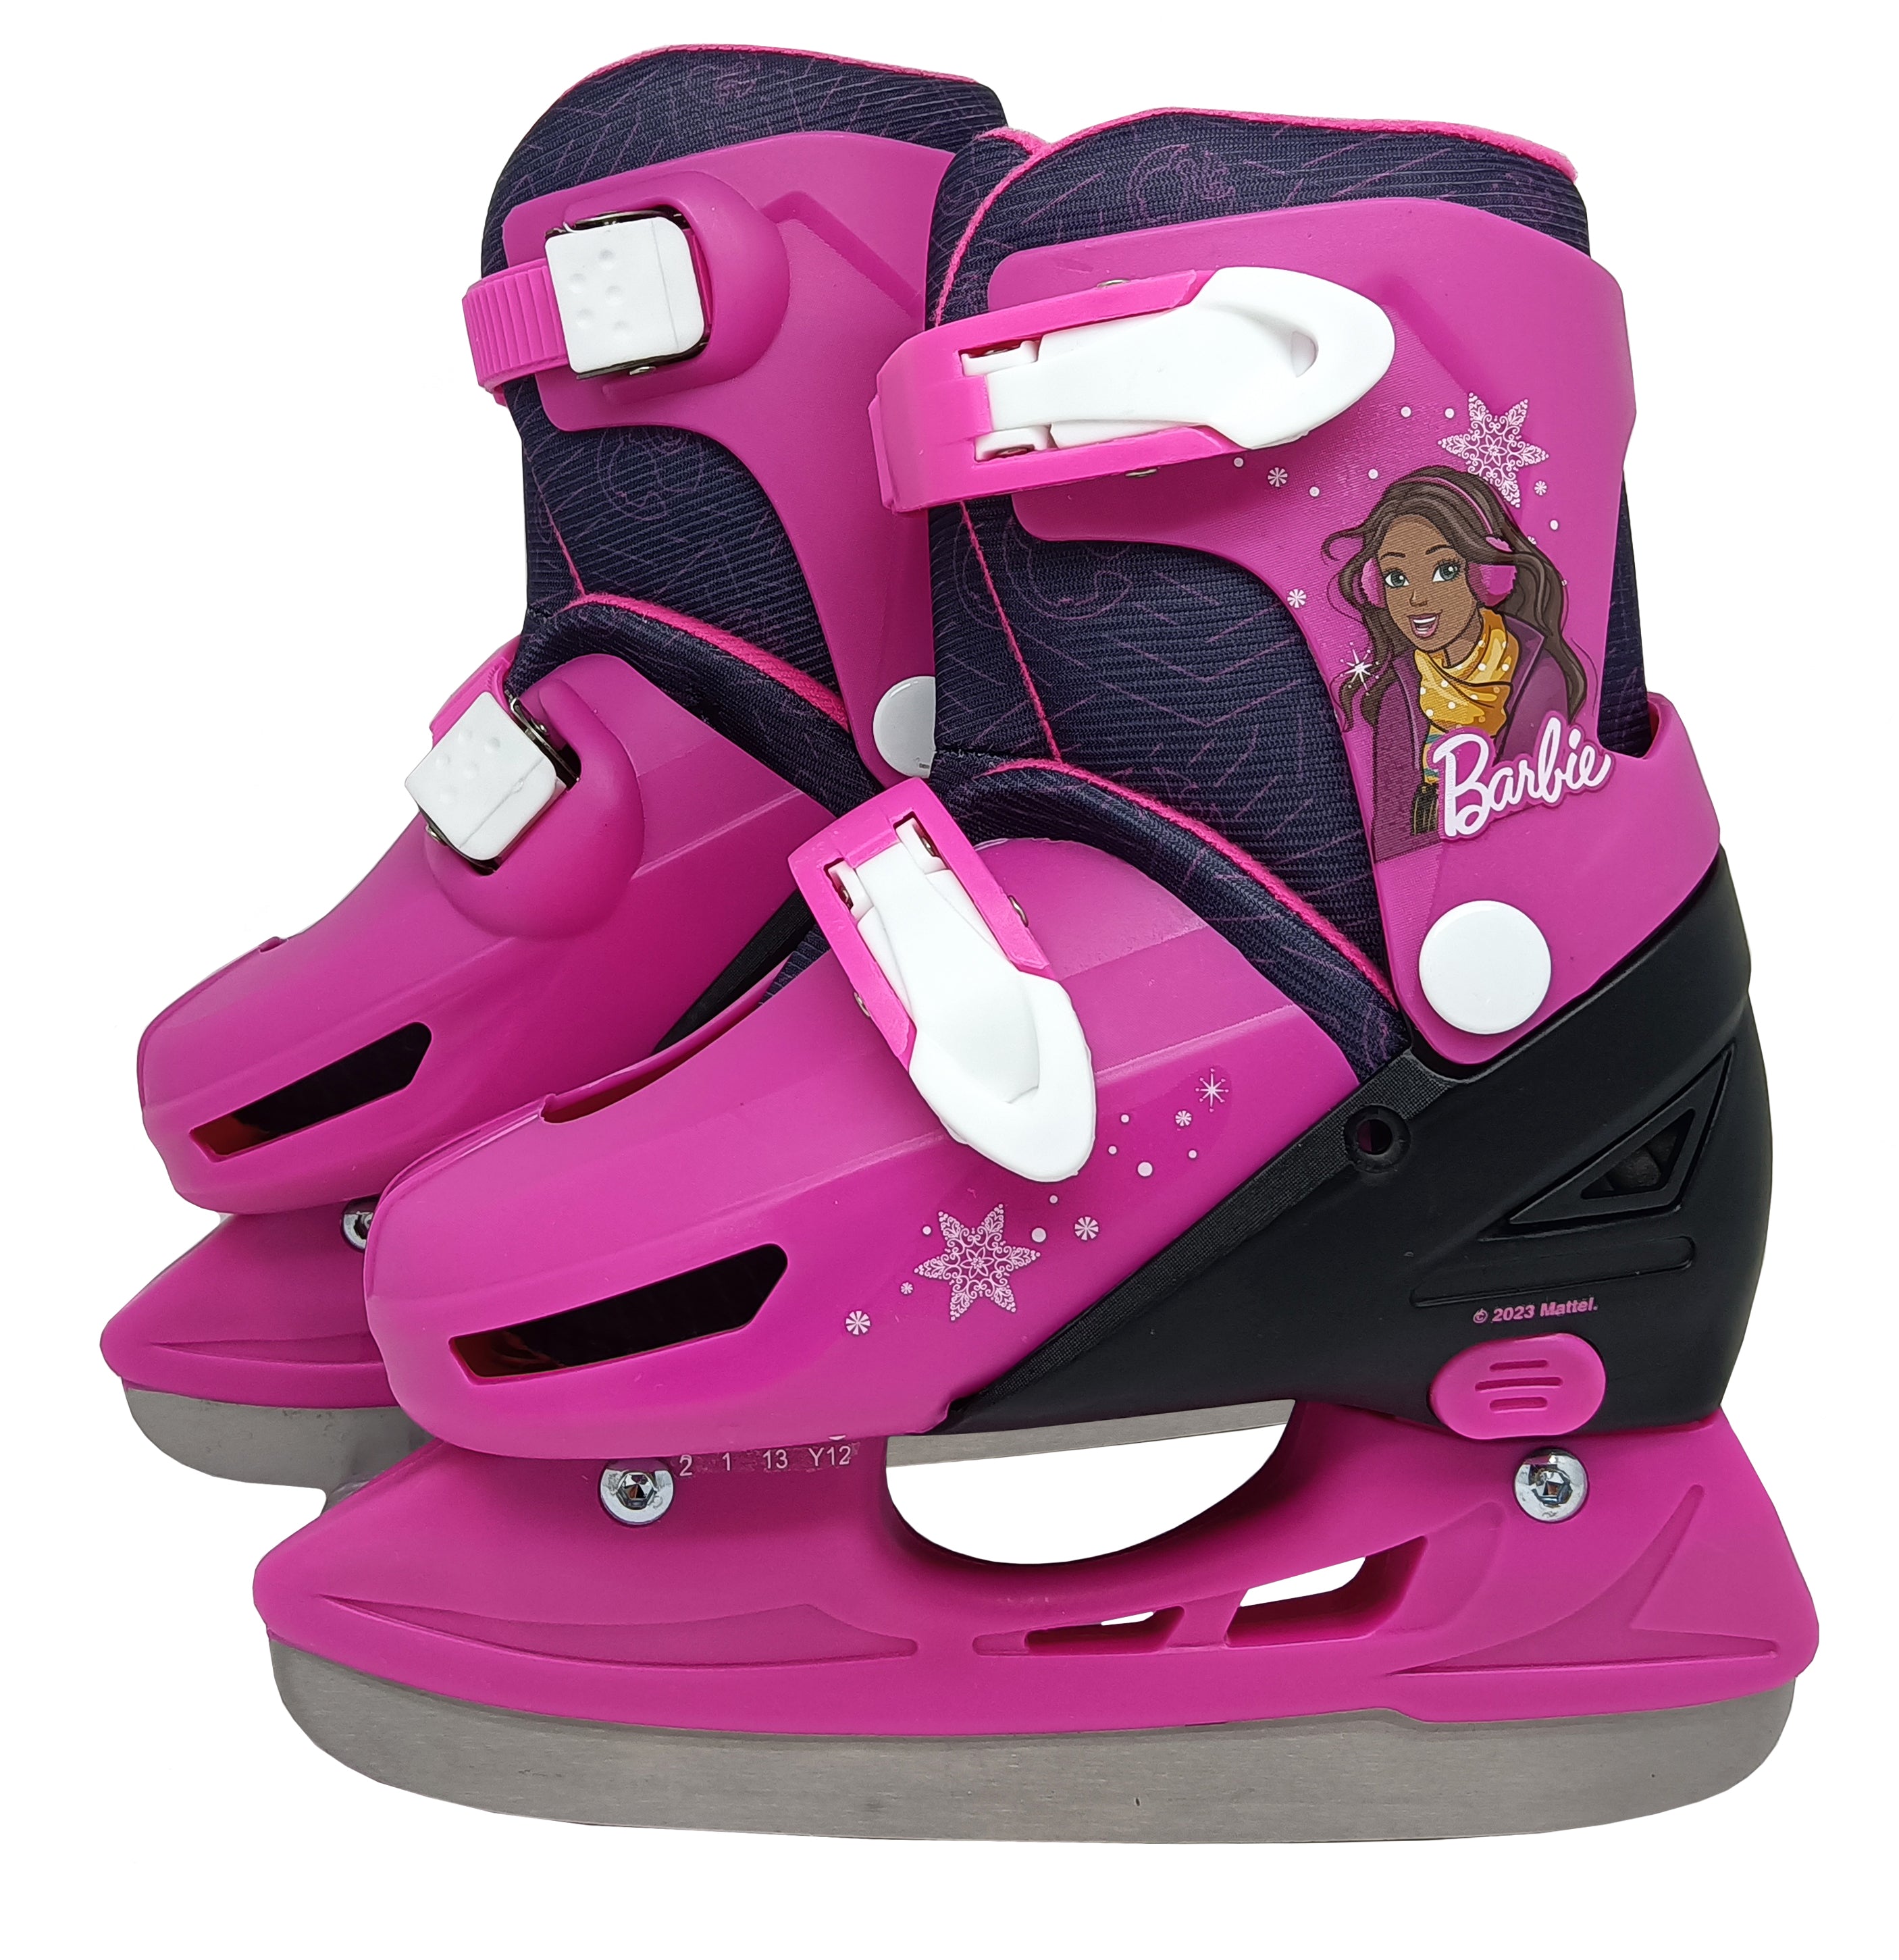 Barbie Ice Skate Y12-2